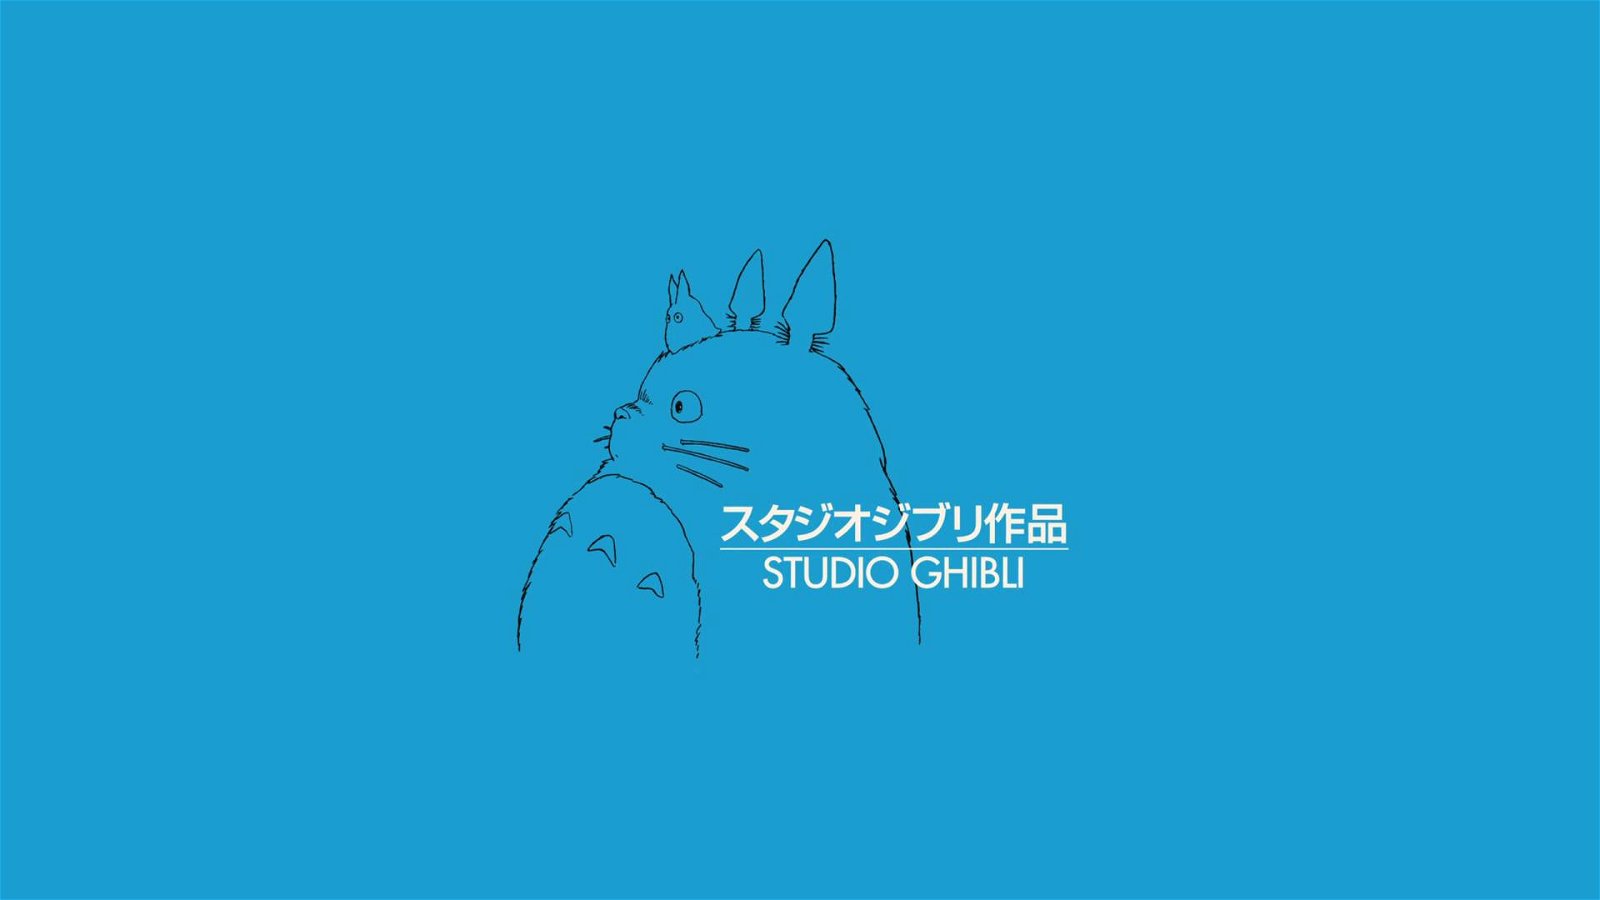 Immagine di Lucky Red non ridoppierà i film dello Studio Ghibli